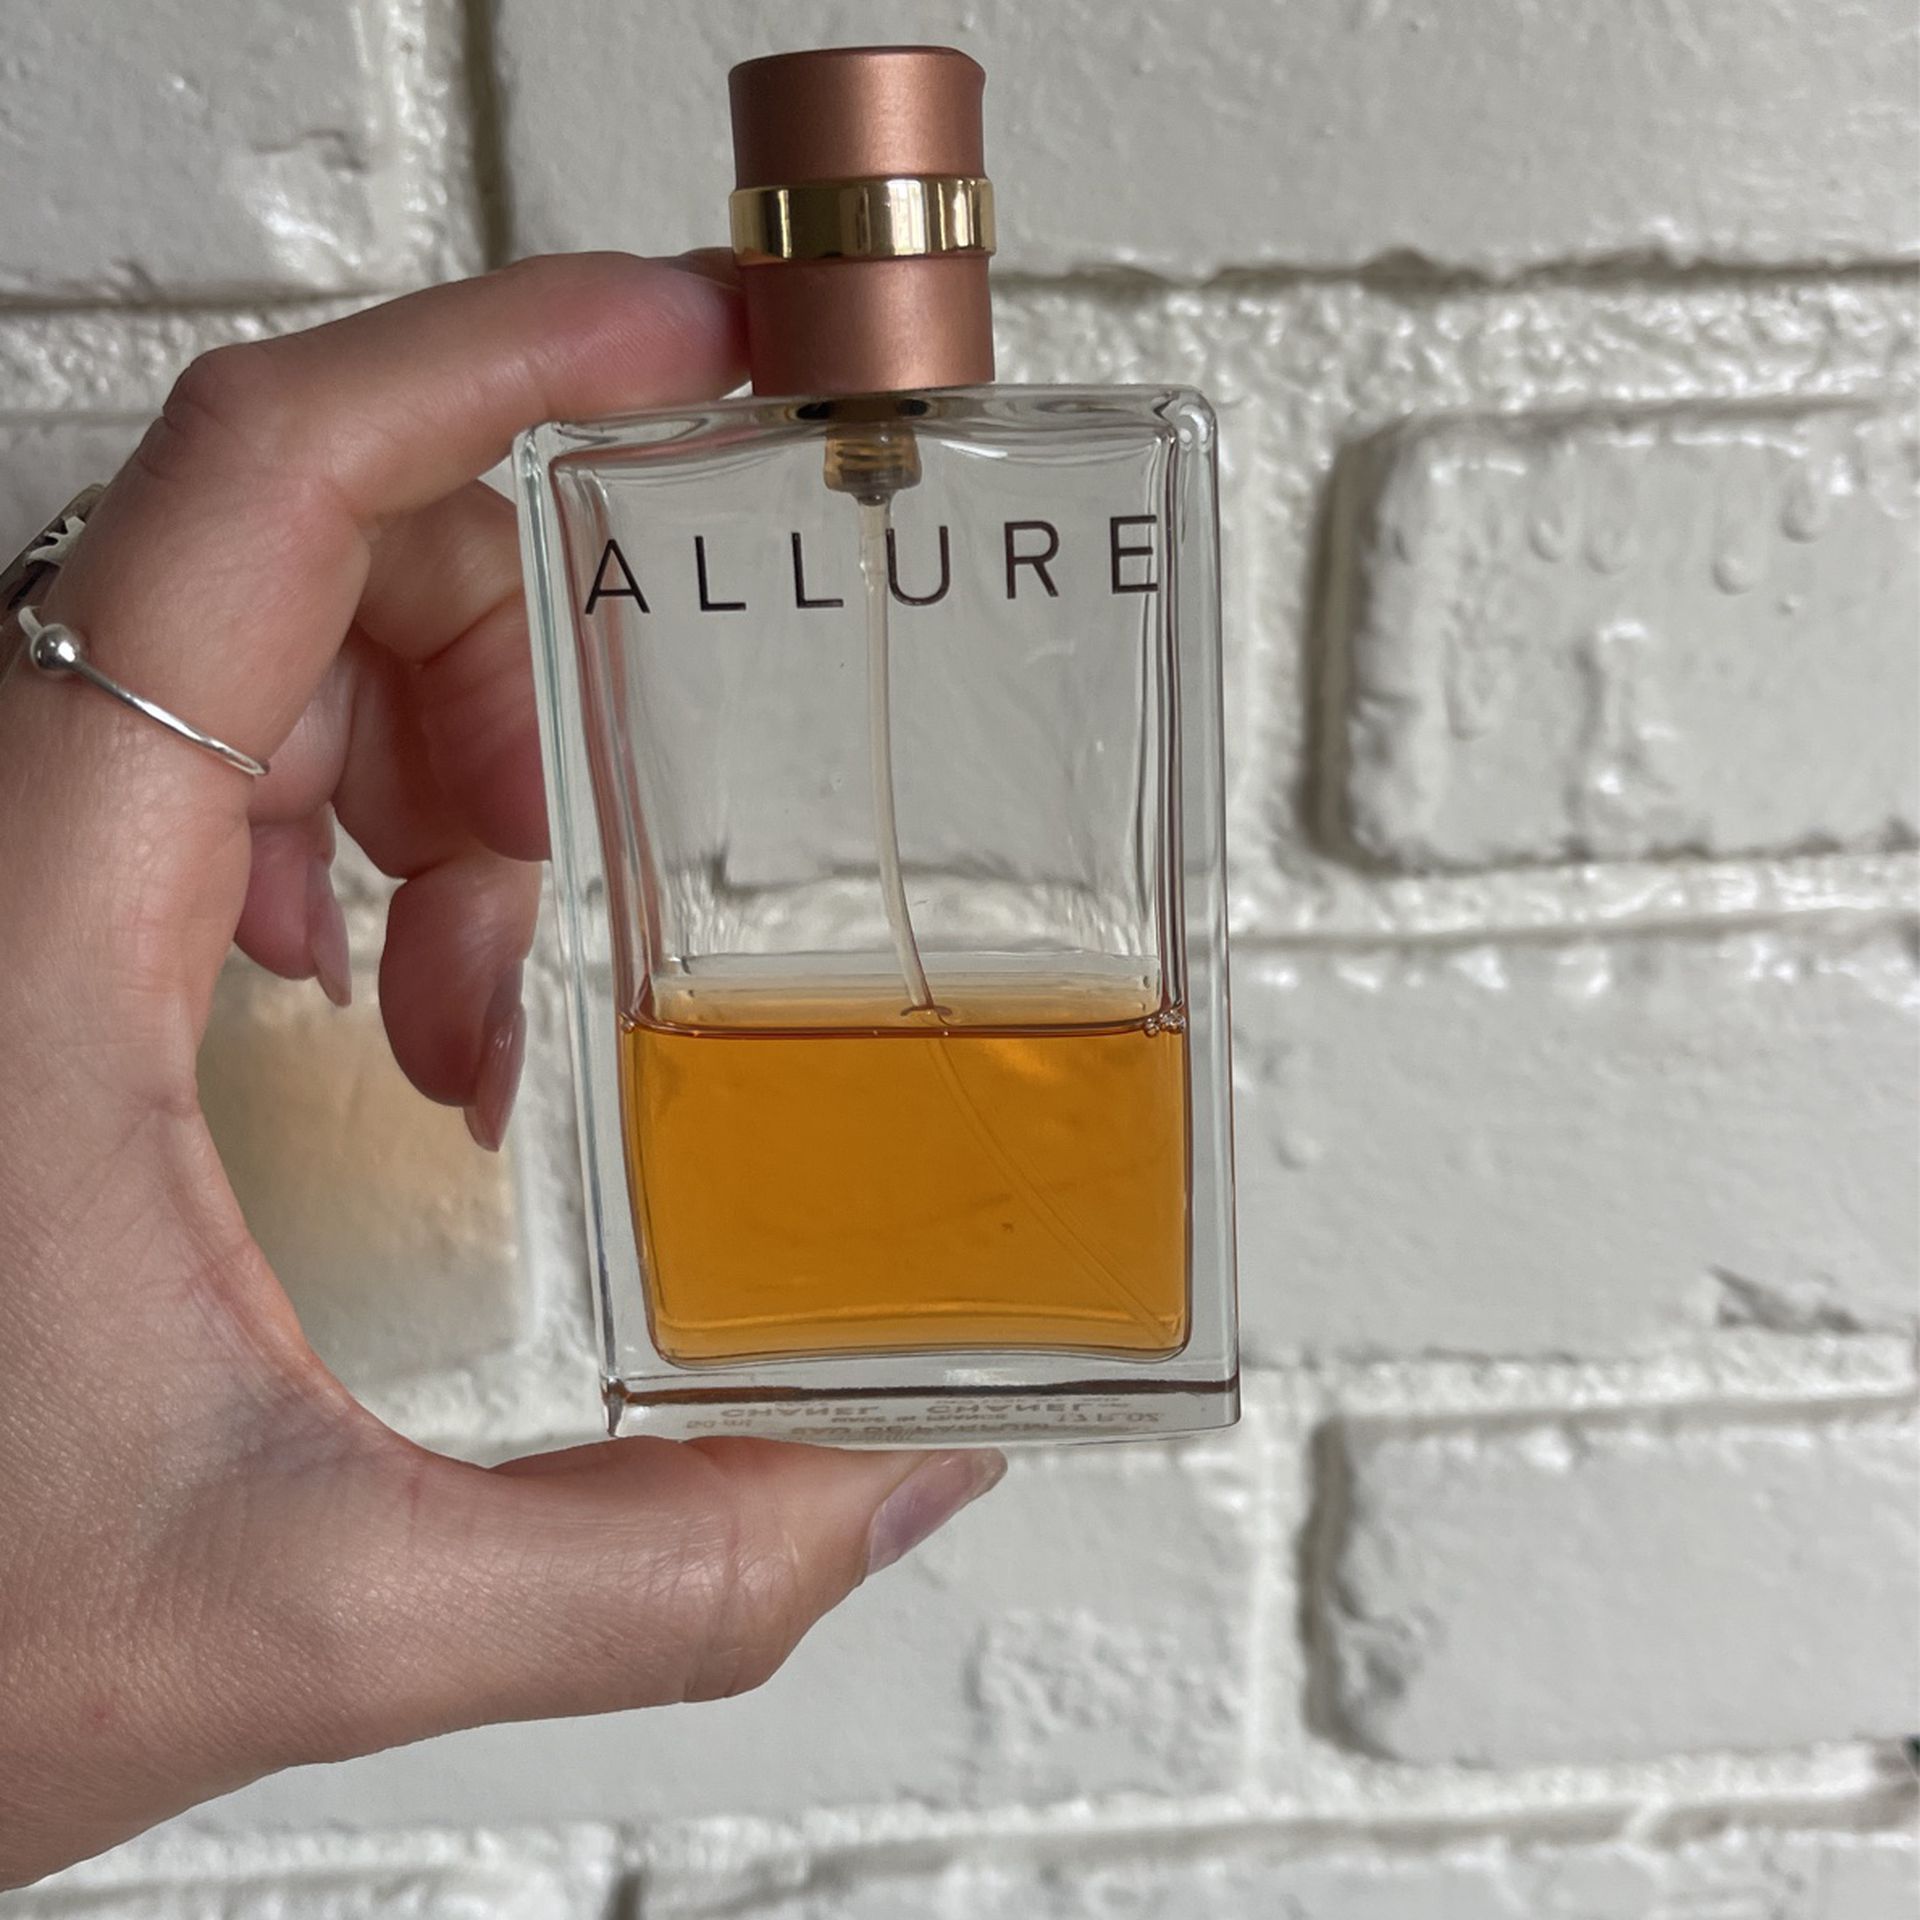 Allure Chanel Perfume